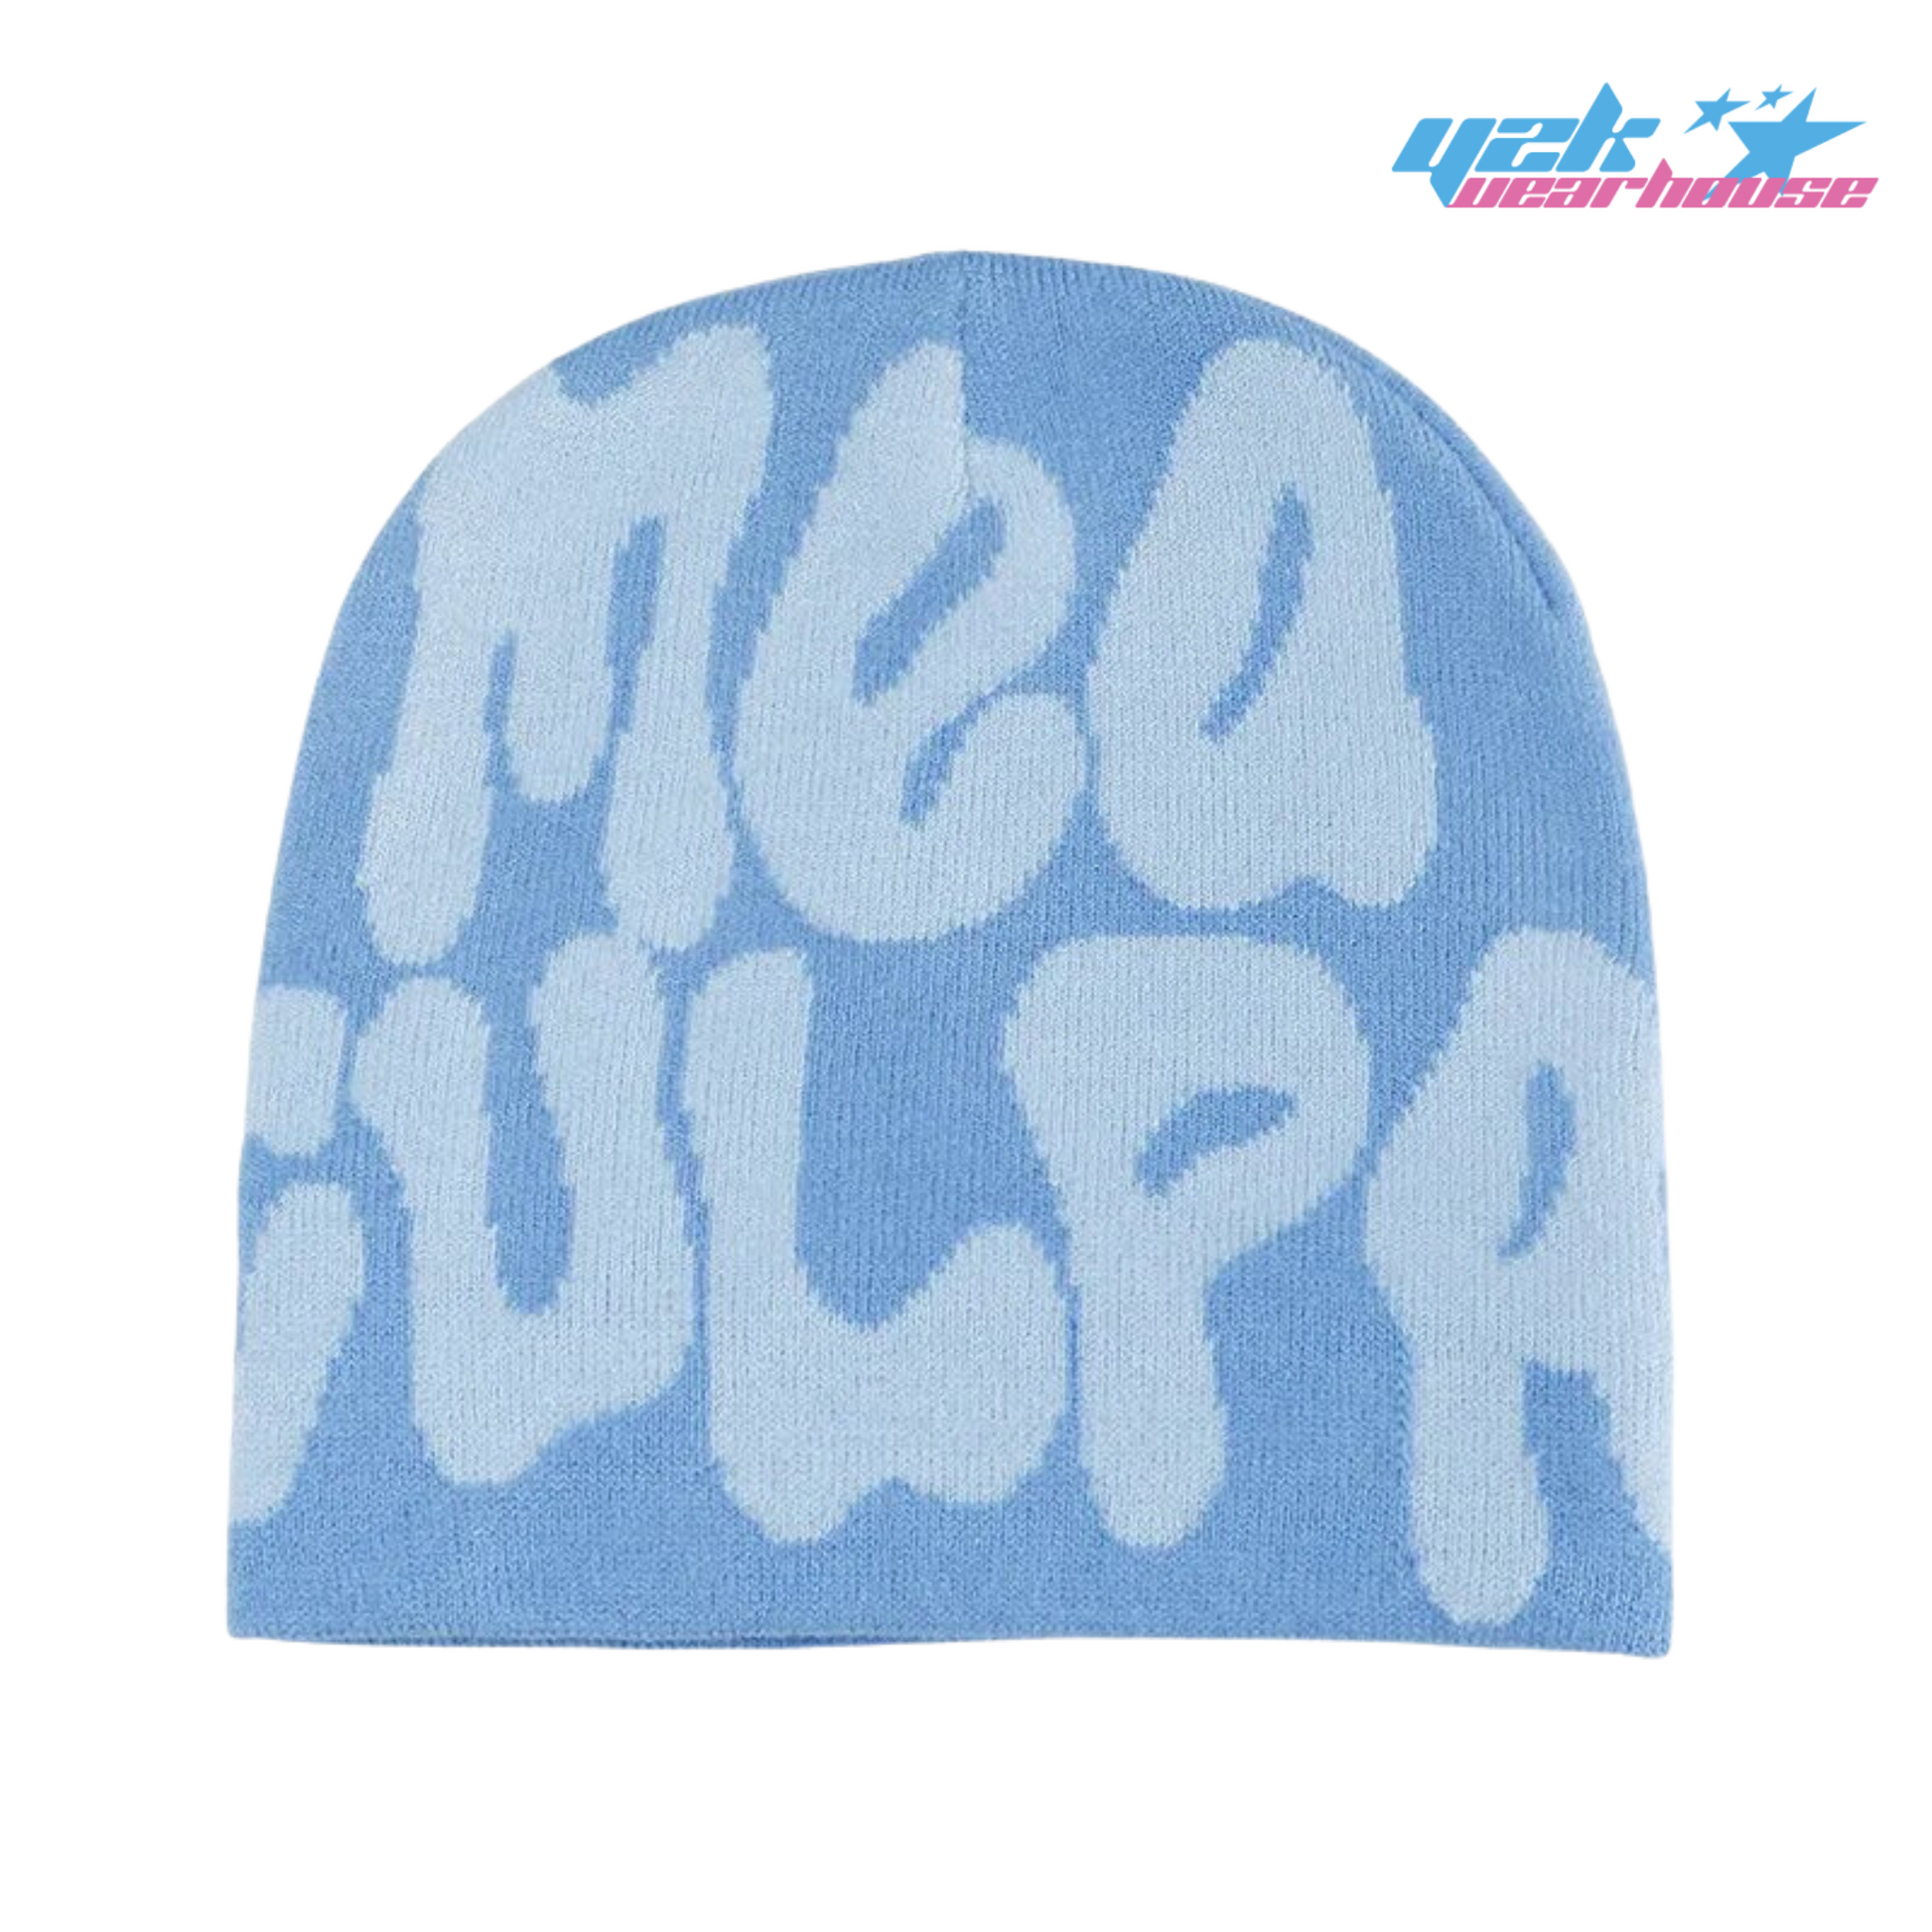 bonnet #meaculpa